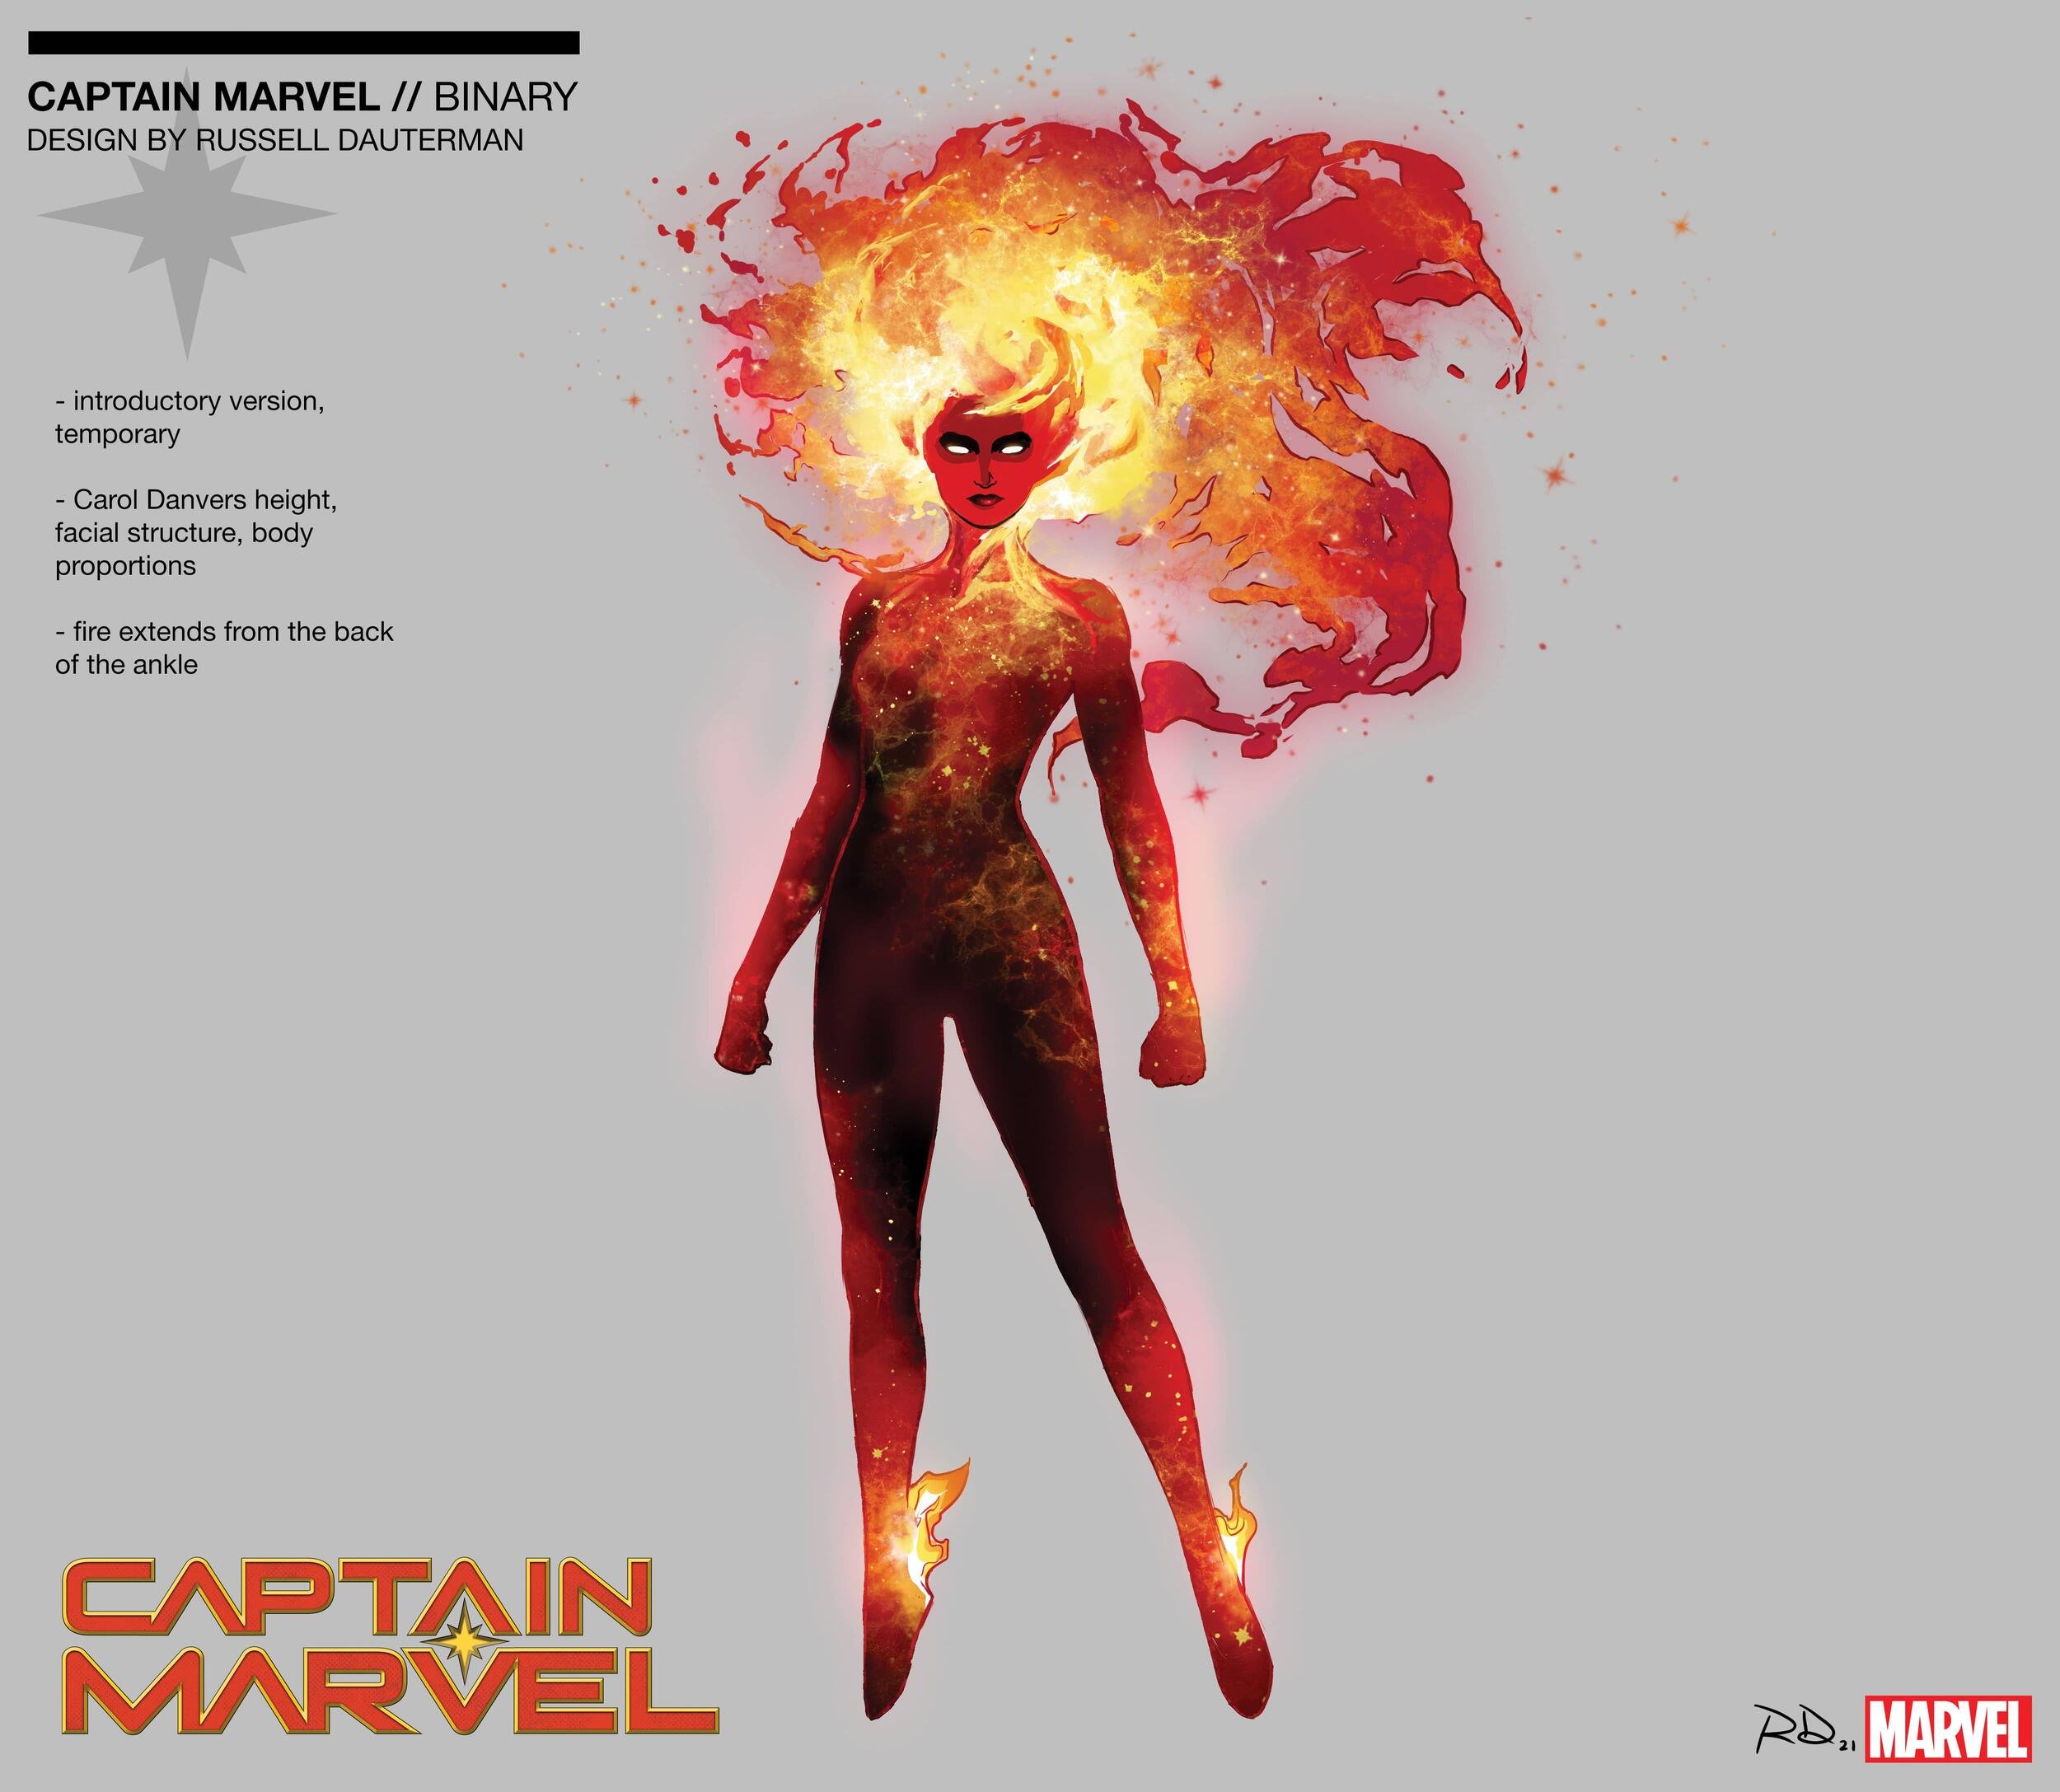 Il design della nuova Binary che sostituisce Captain Marvel, di Russell Dauterman